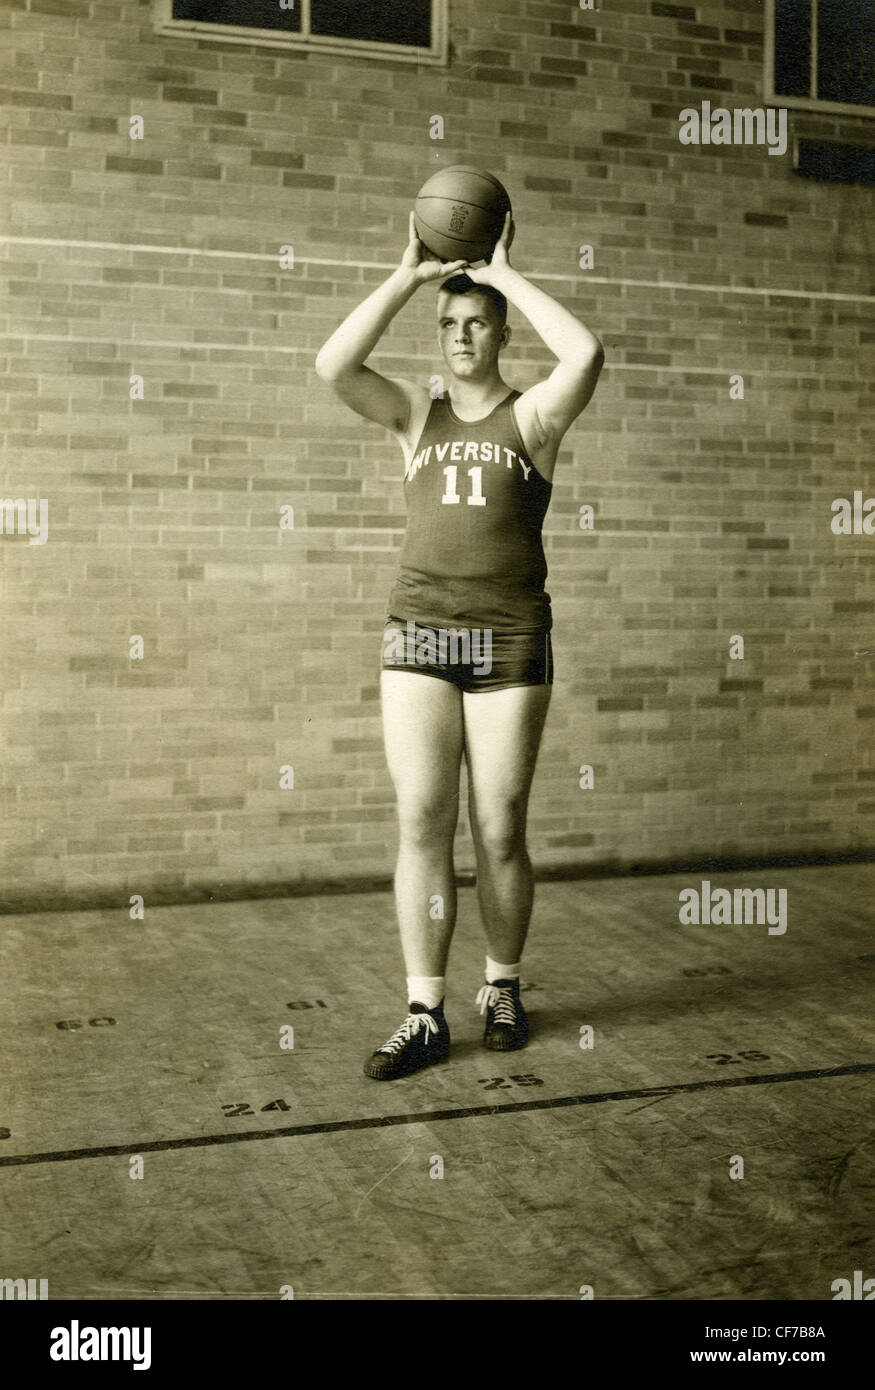 Universität-Basketball-Spieler Basketball während Porträt in 1945 oder 1946 Sport-Spieler der 1940er Jahre zu halten Stockfoto